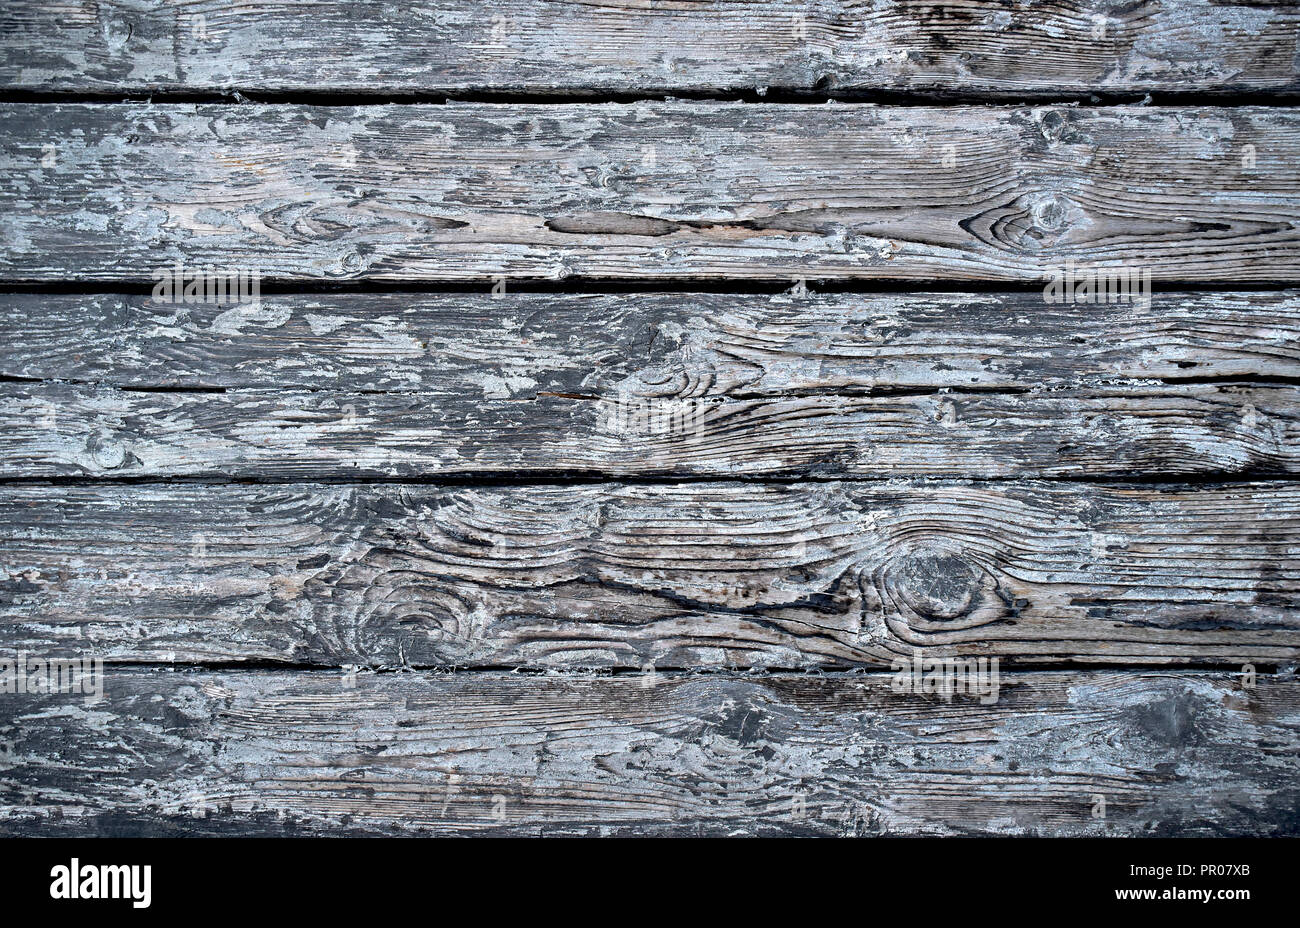 Verwittertes Holz Textur oder Holzbrettern. Run down Holz Hintergrund mit Kopie Raum, grobe Tabelle Textur. Stockfoto